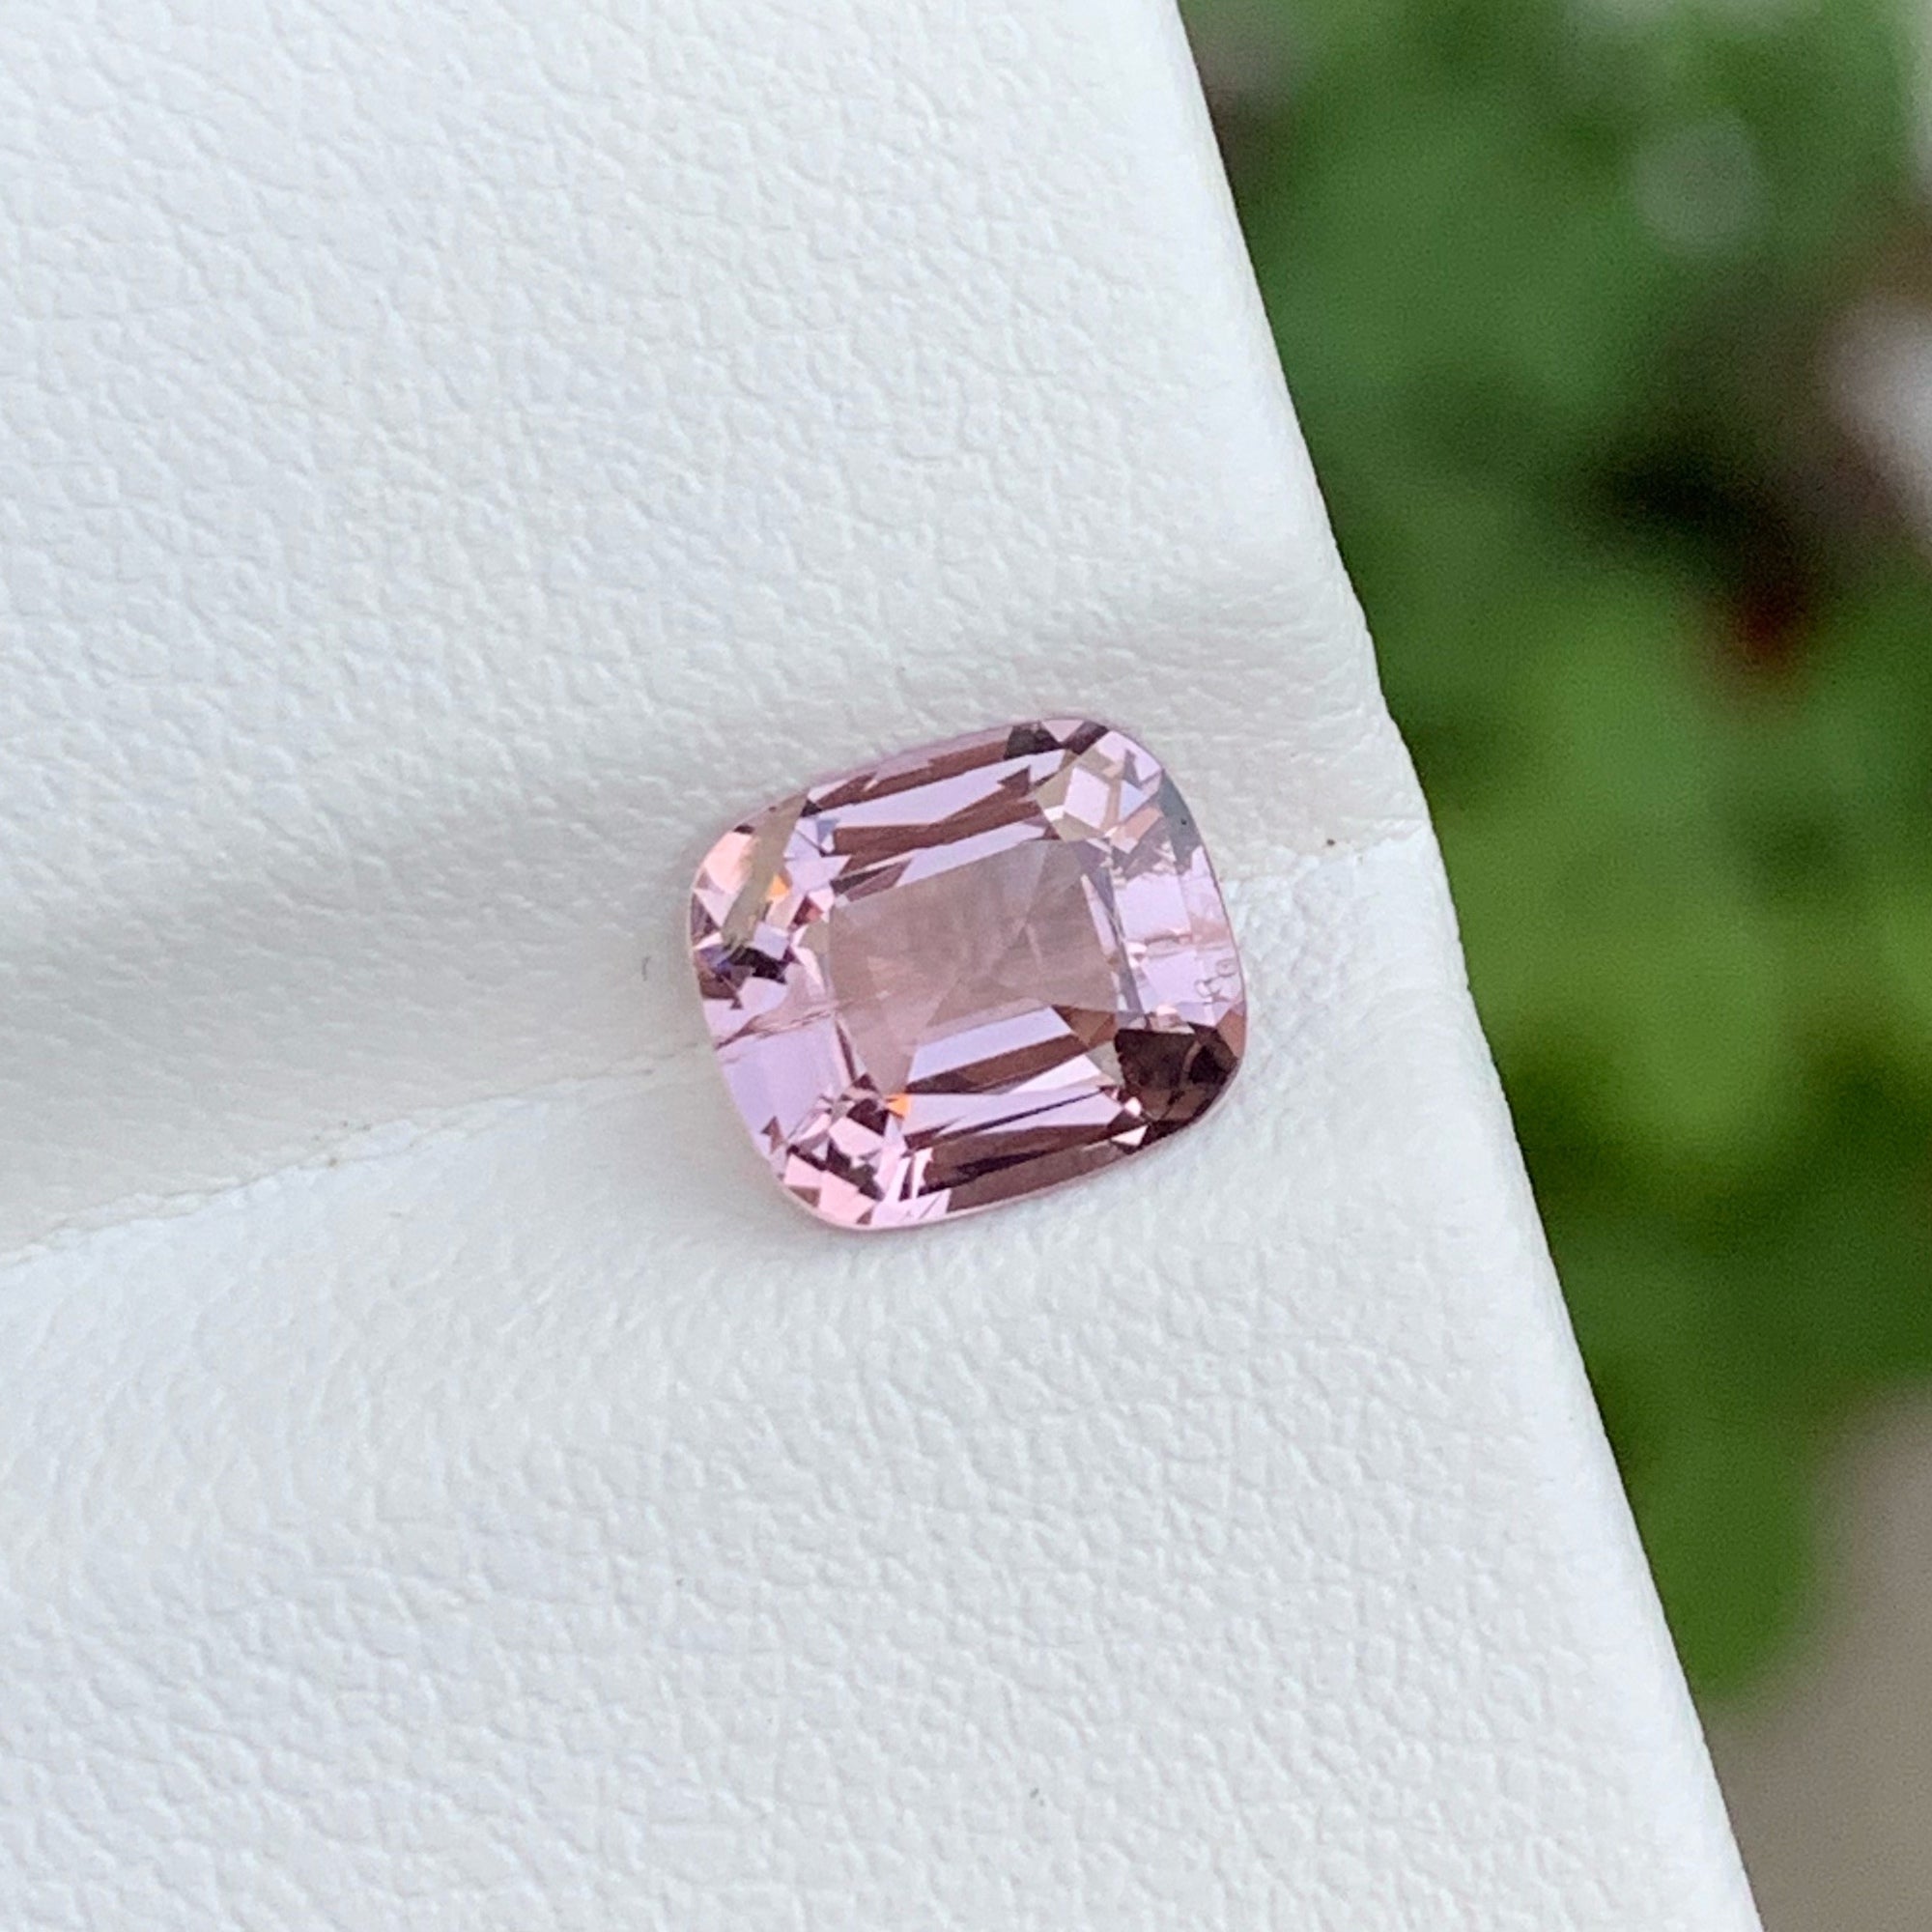 Excellent Bright Pink Cut Spinel Gemstone